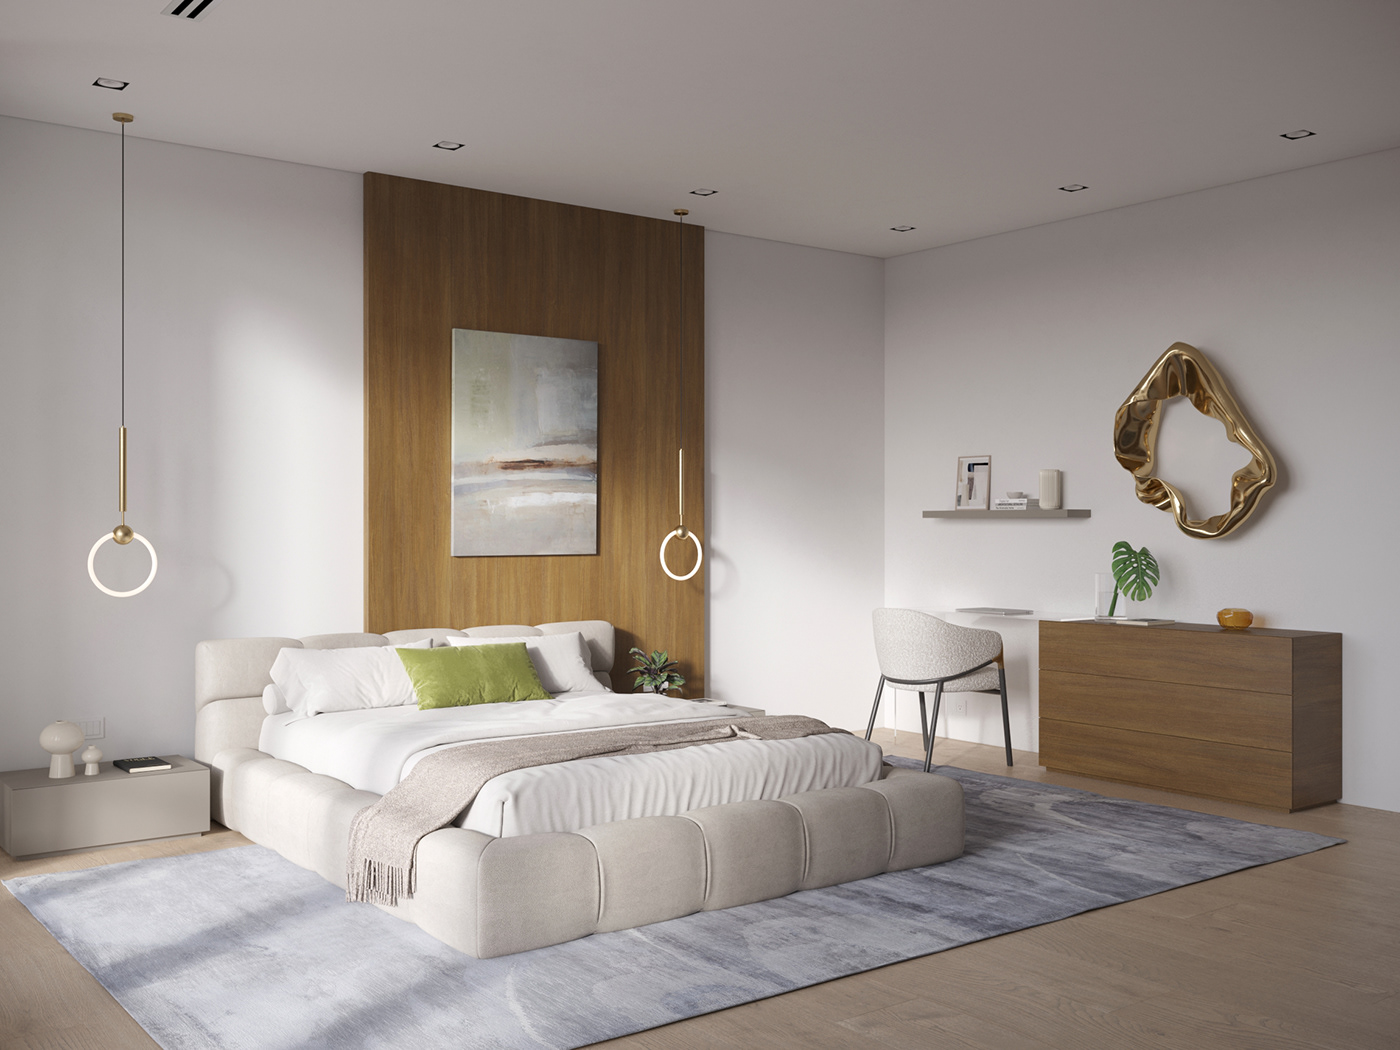 3ds max bedroom corona render  interior design 